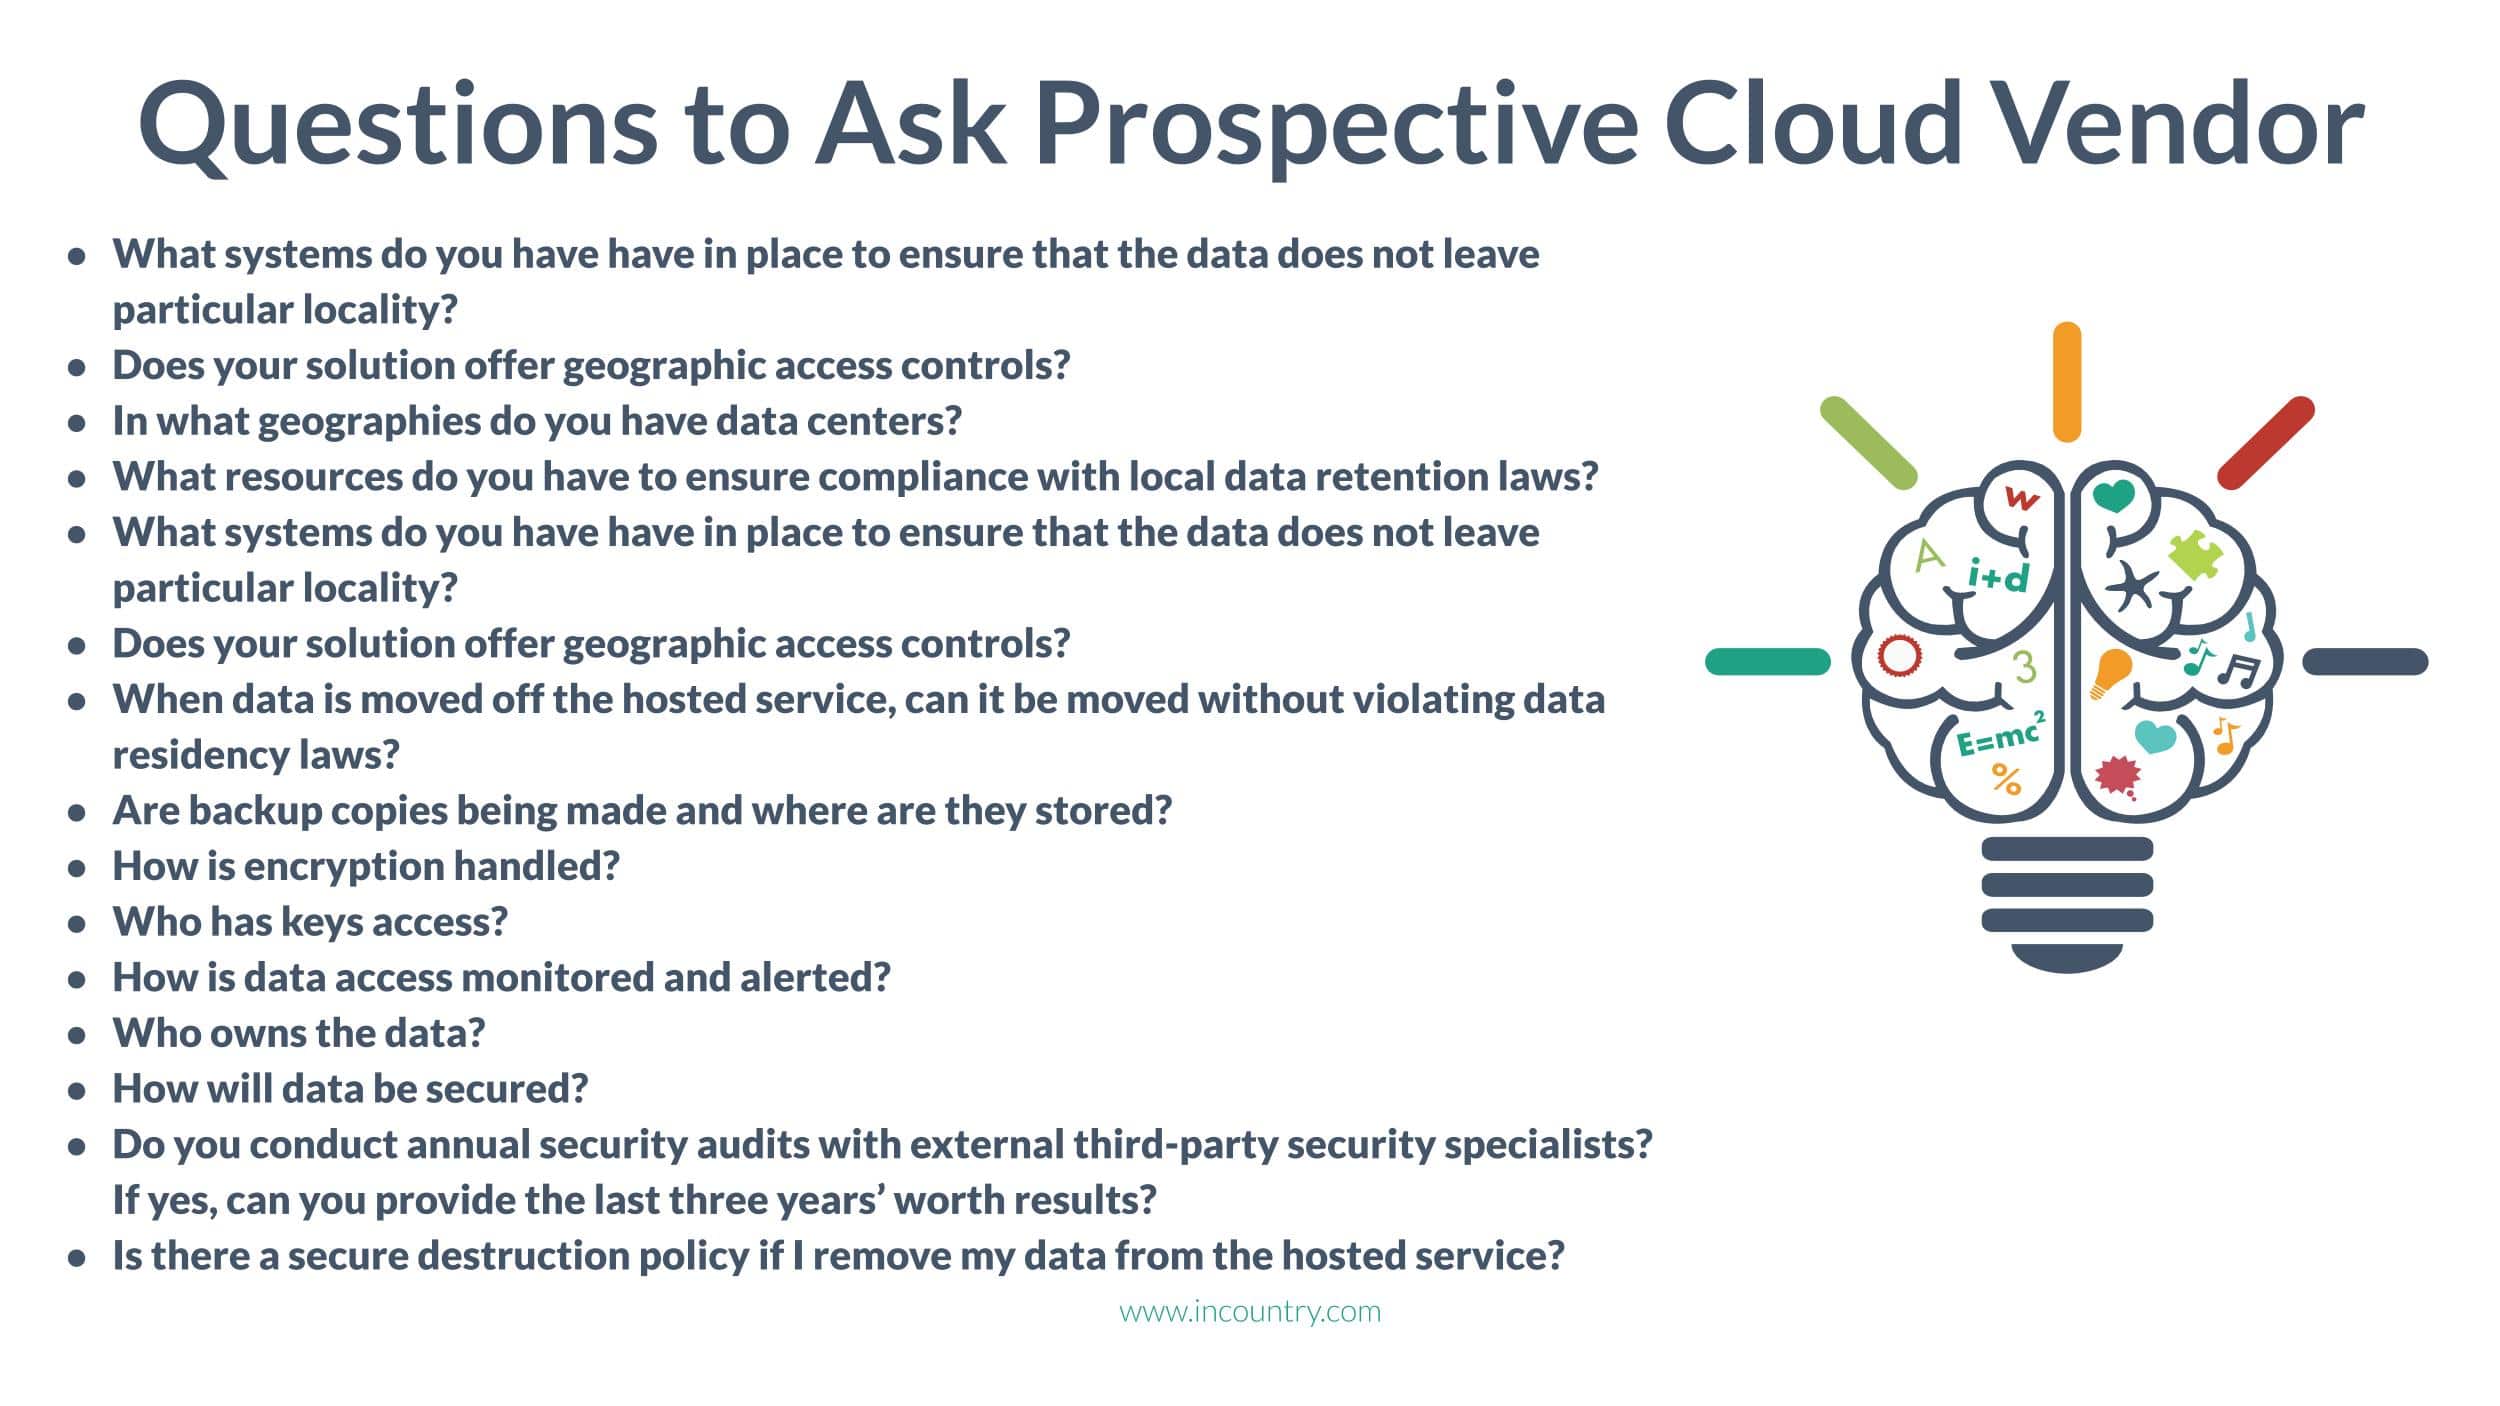 Questions to ask a prospective cloud vendor: